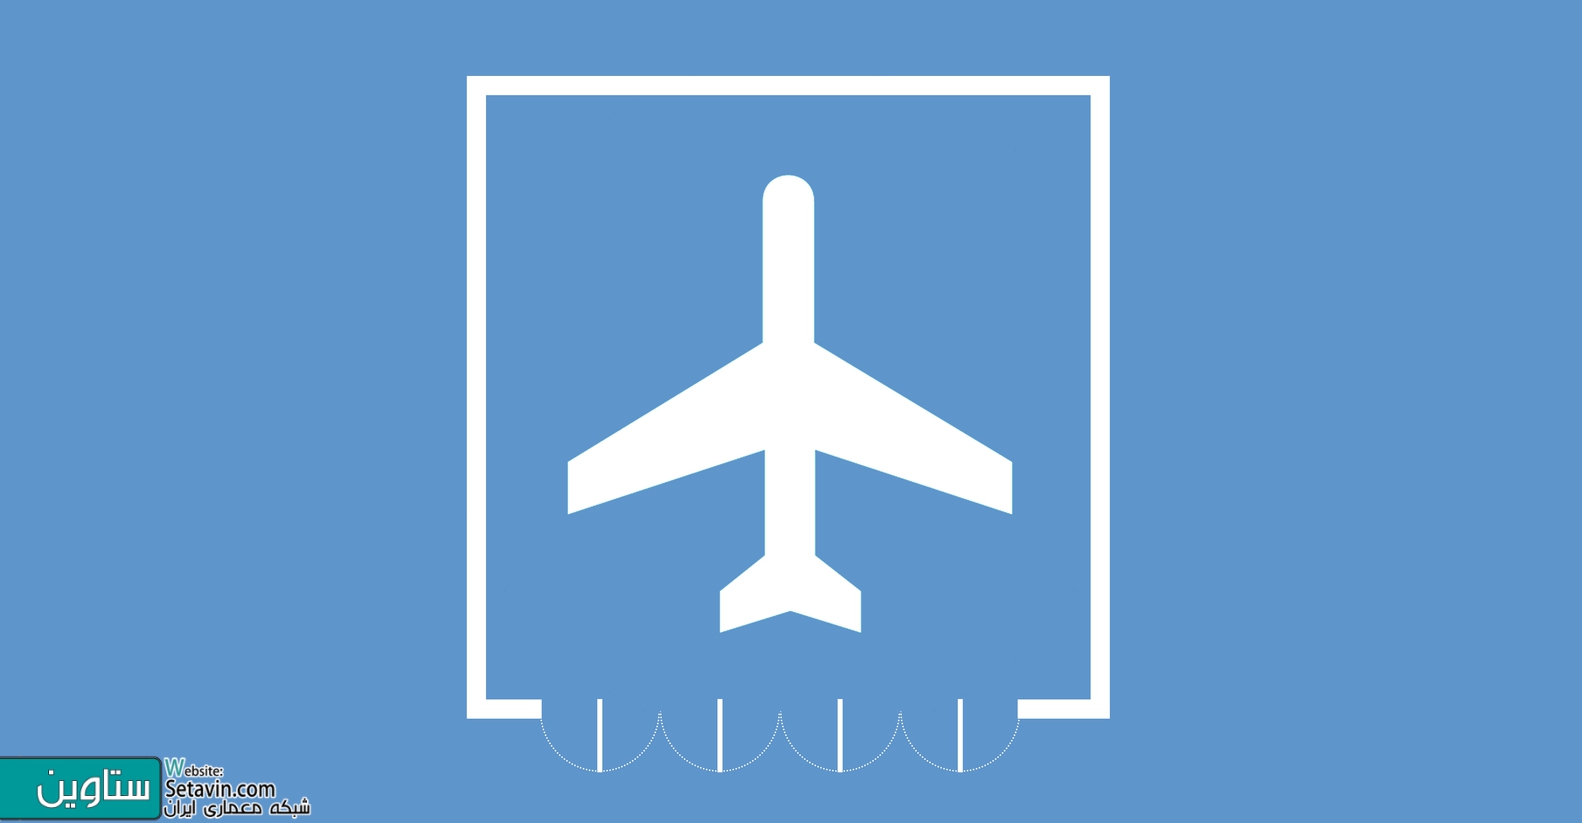 فرودگاهها:نمونه هایی در پلان و مقطع